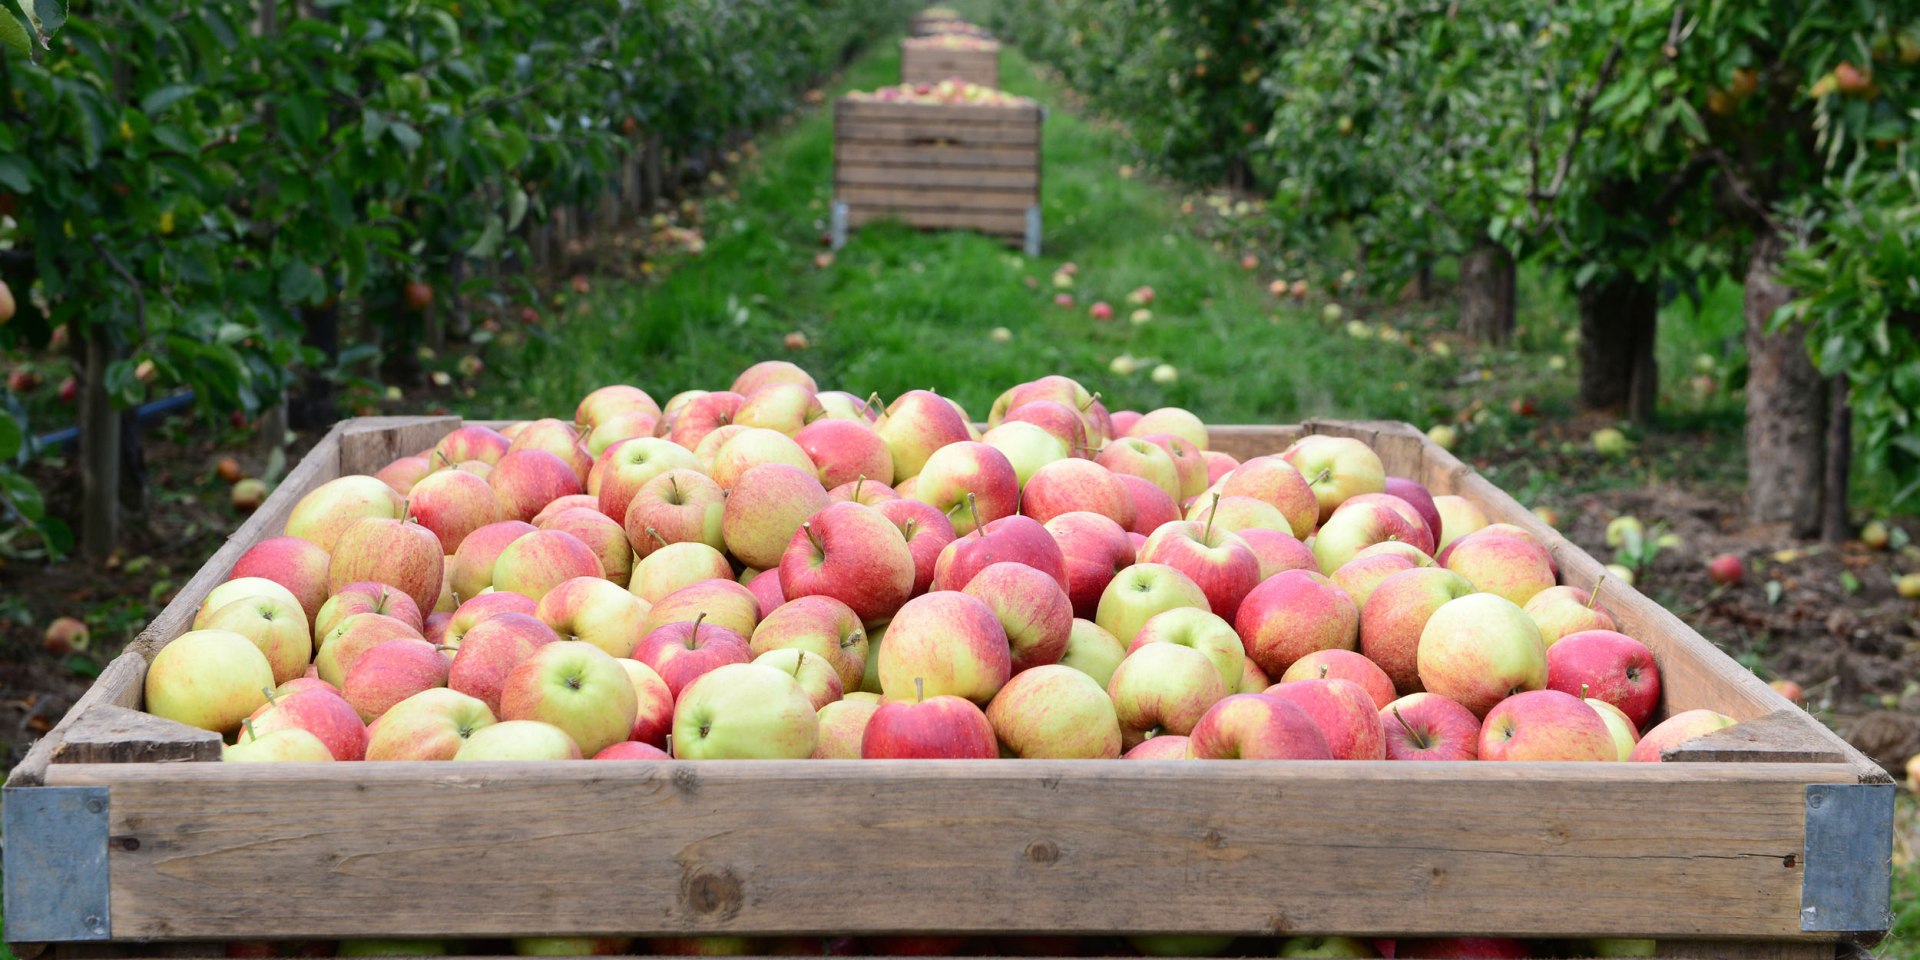 geerntete Äpfel in großen Apfelkisten zwischen Apfelbäumen, © Tourismusverband LK Stade/Elbe e. V./ Martin Elsen